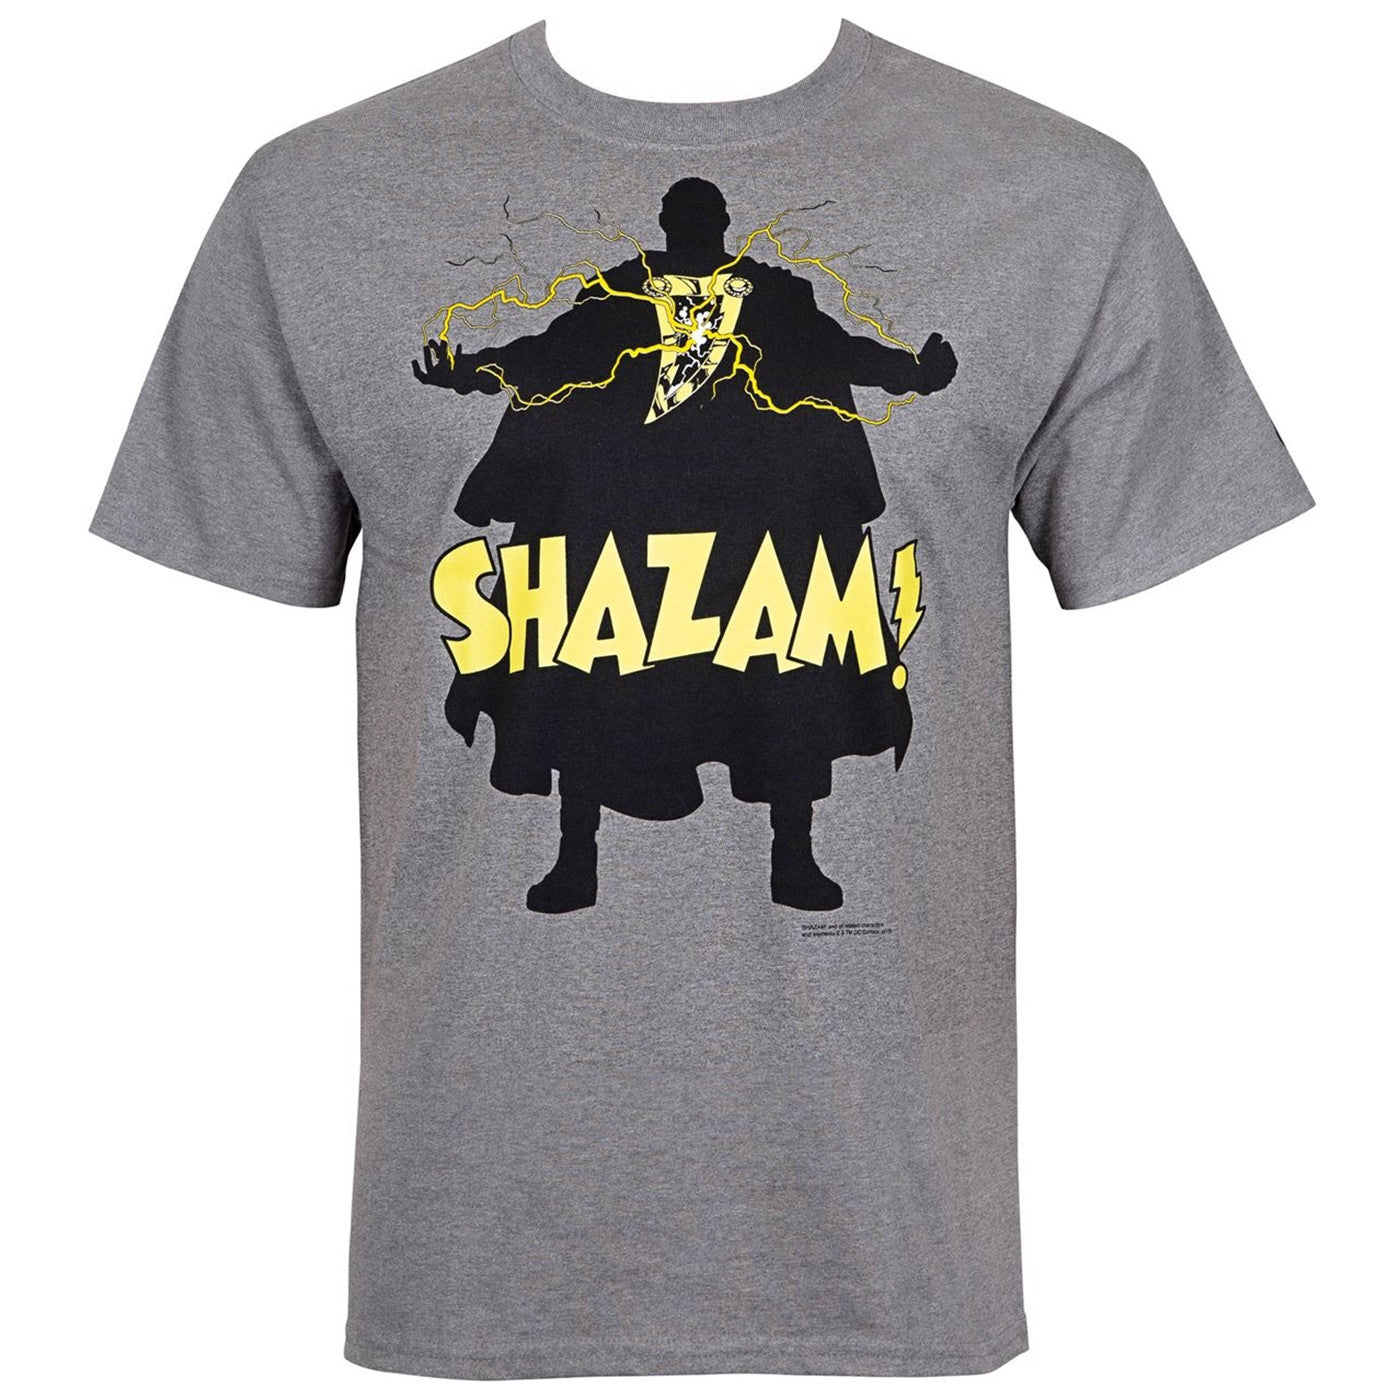 Shazam! Silhoutee Men's T-Shirt